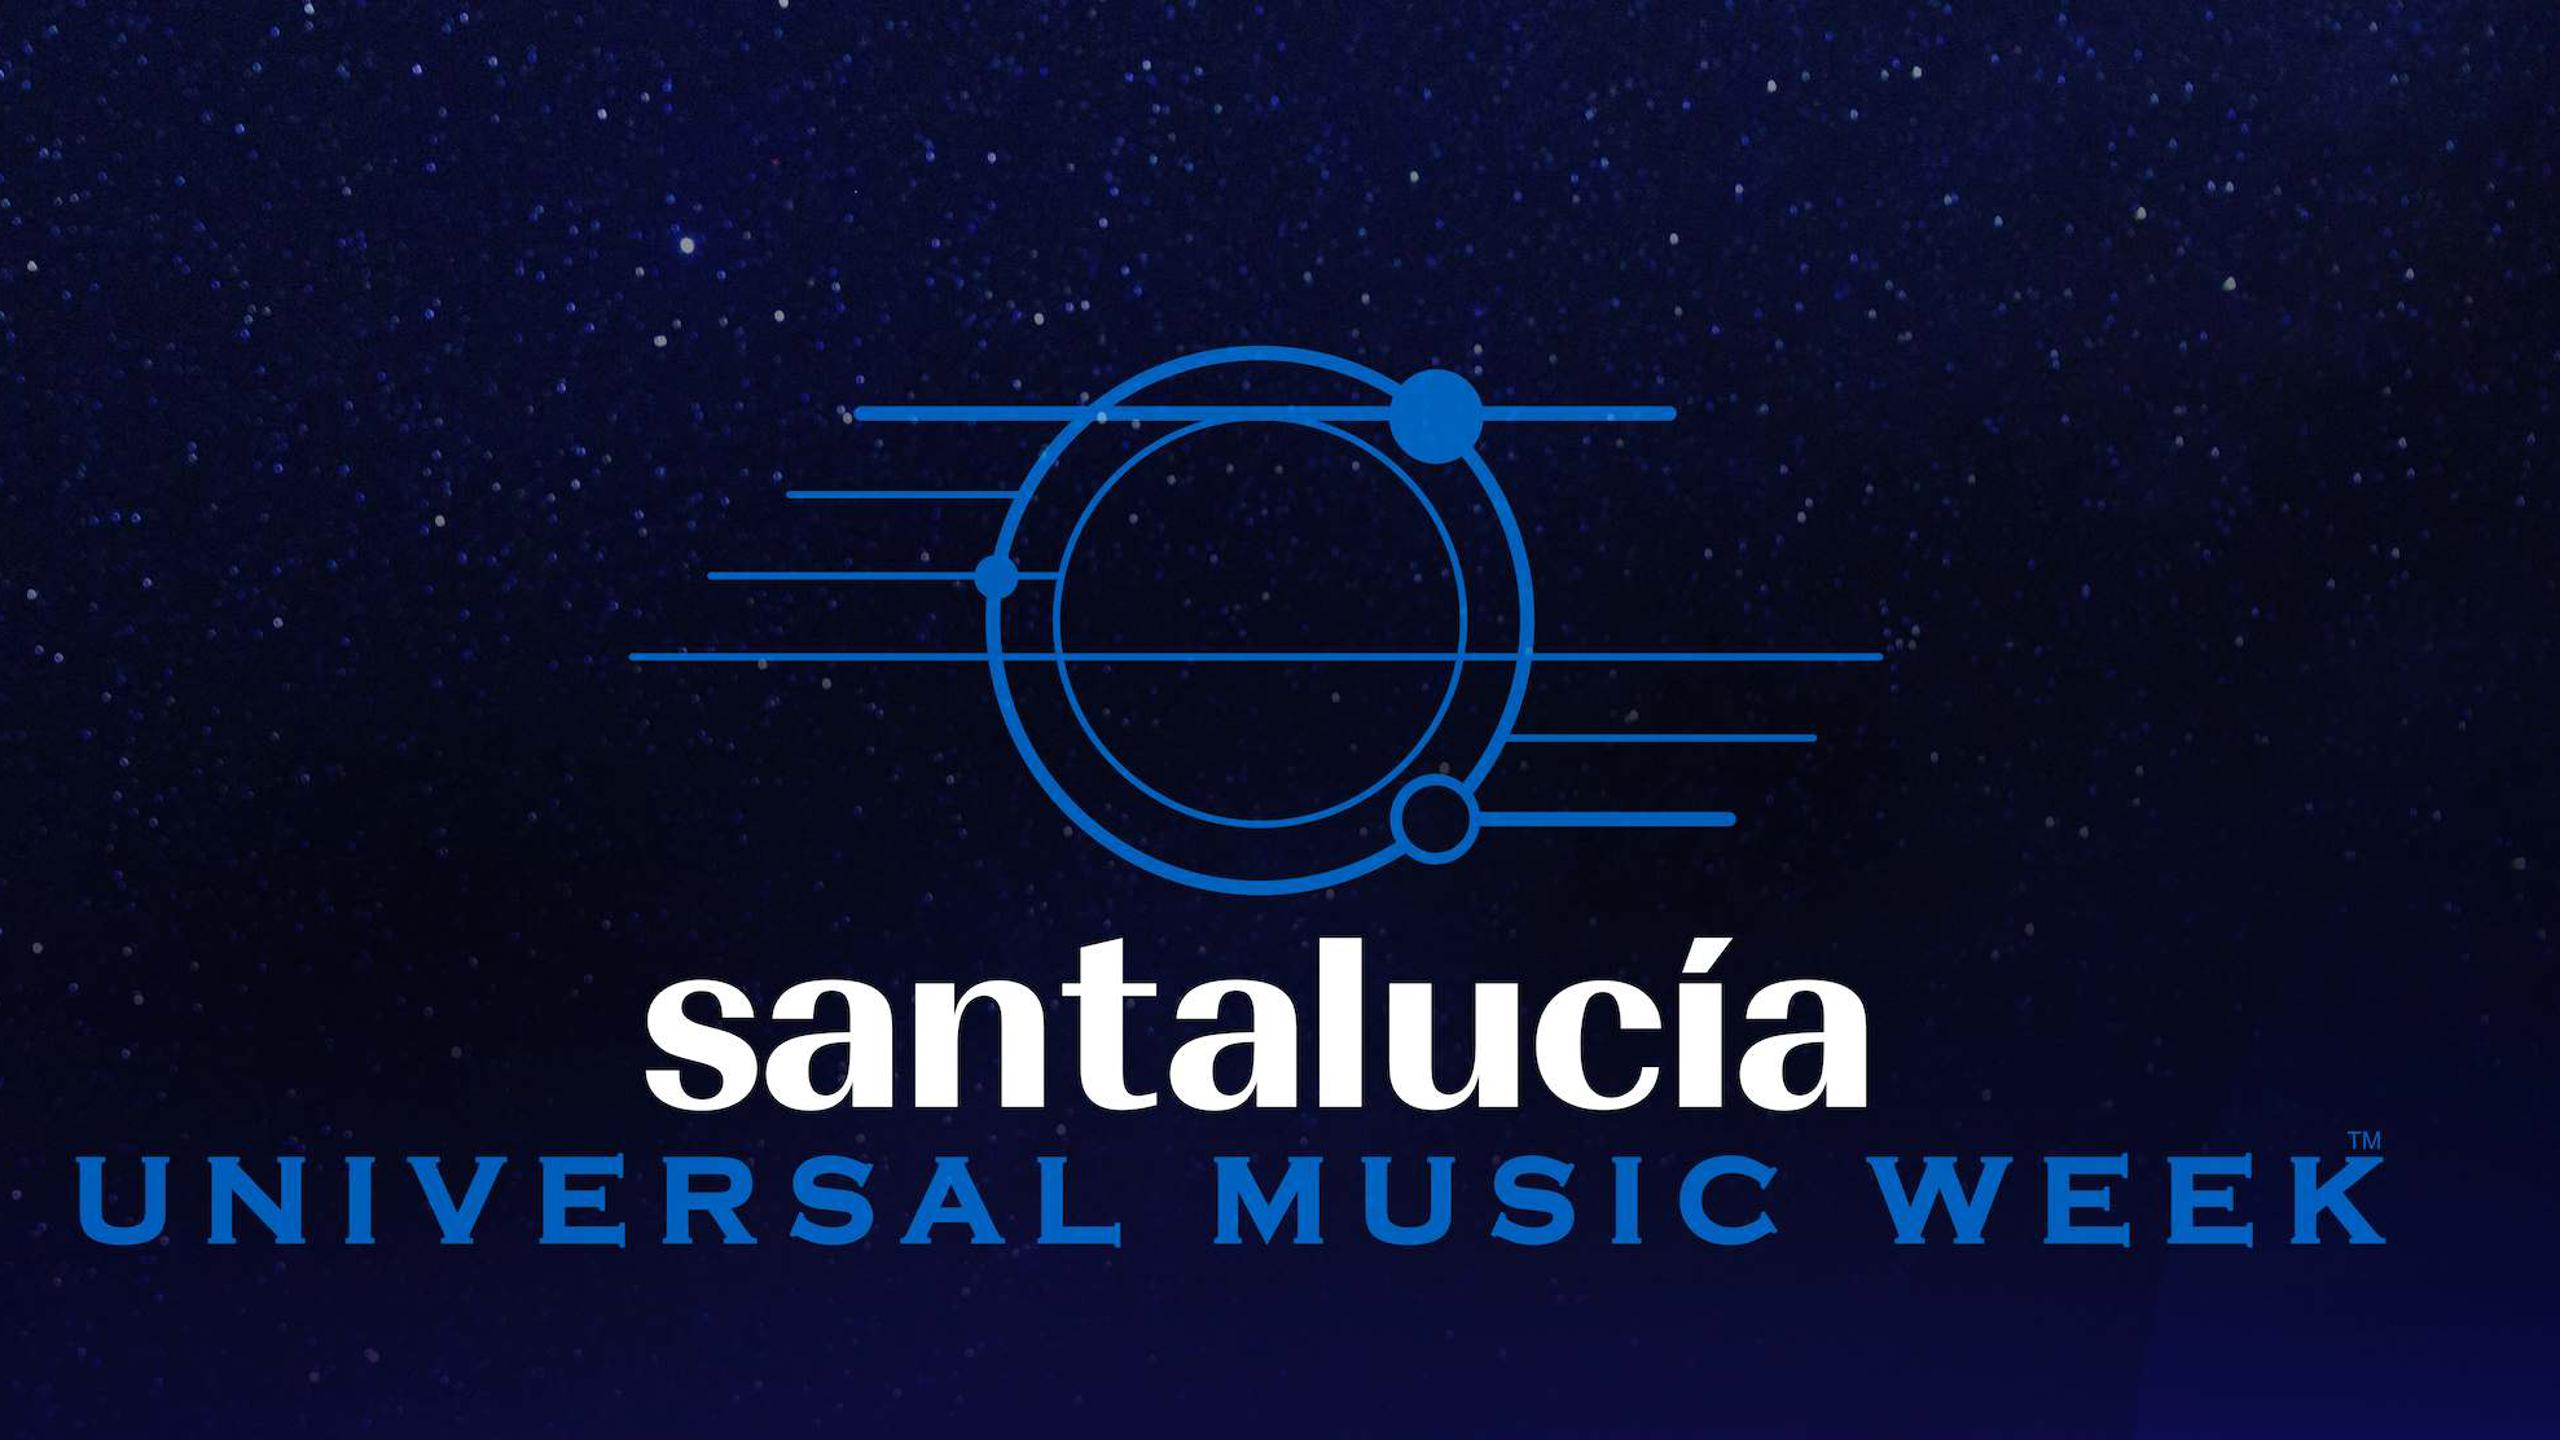 Fotografía promocional de Santalucía Universal Music Week en Sevilla